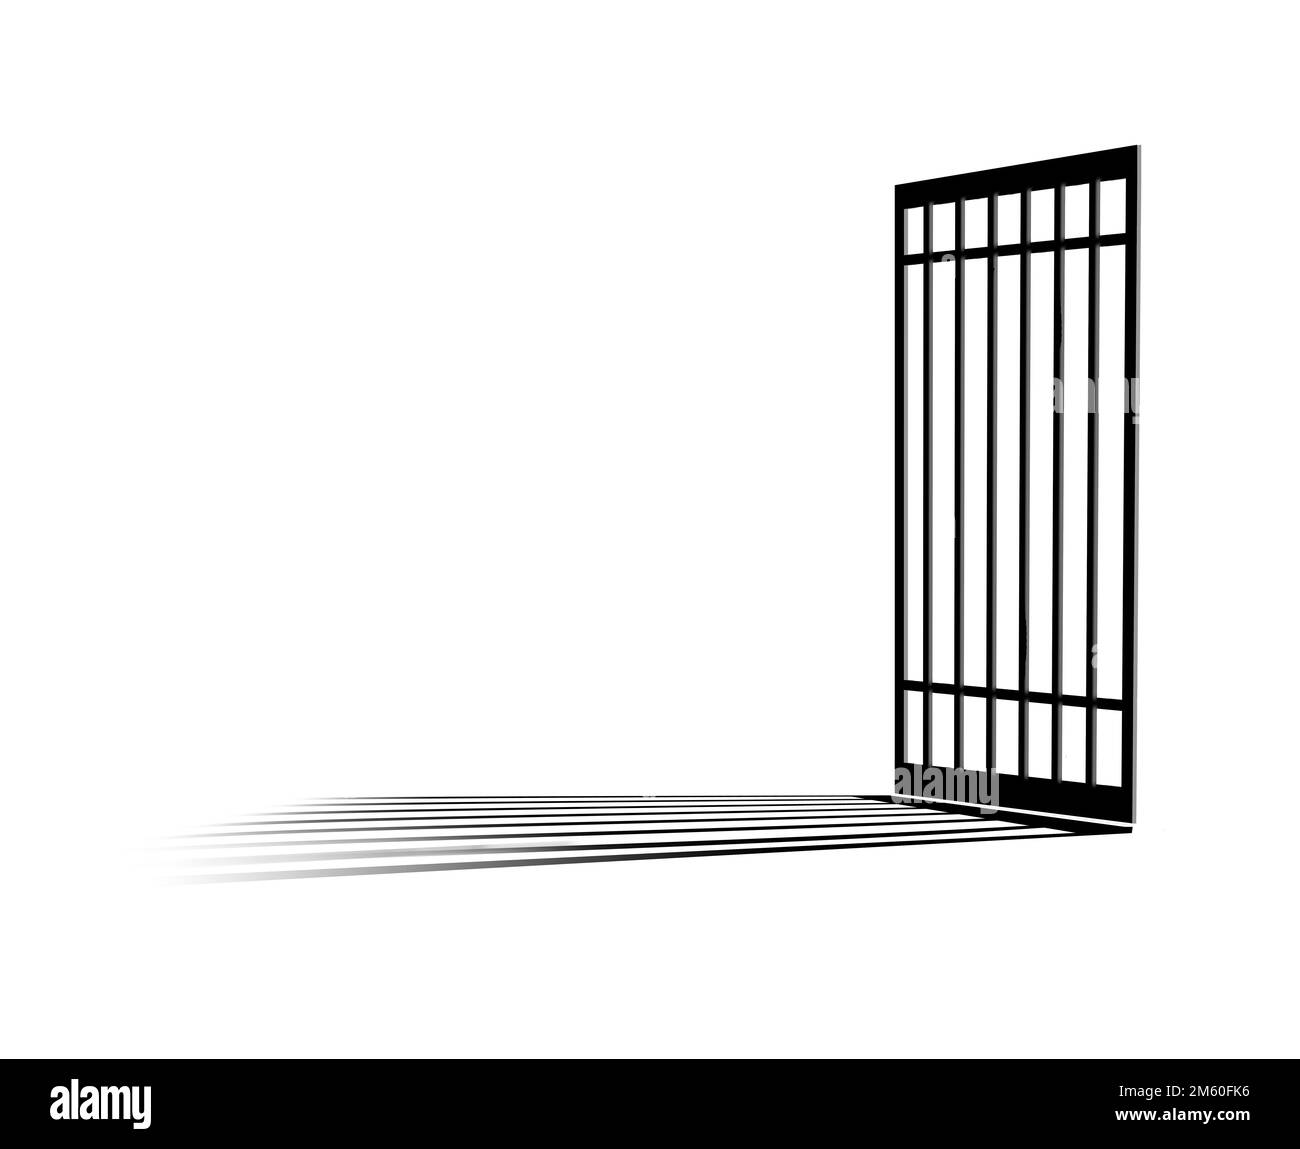 Une cellule de prison est vue dans une simple image graphique en noir et blanc isolée sur blanc. Il s'agit d'une illustration 3-d avec des ombres. Banque D'Images